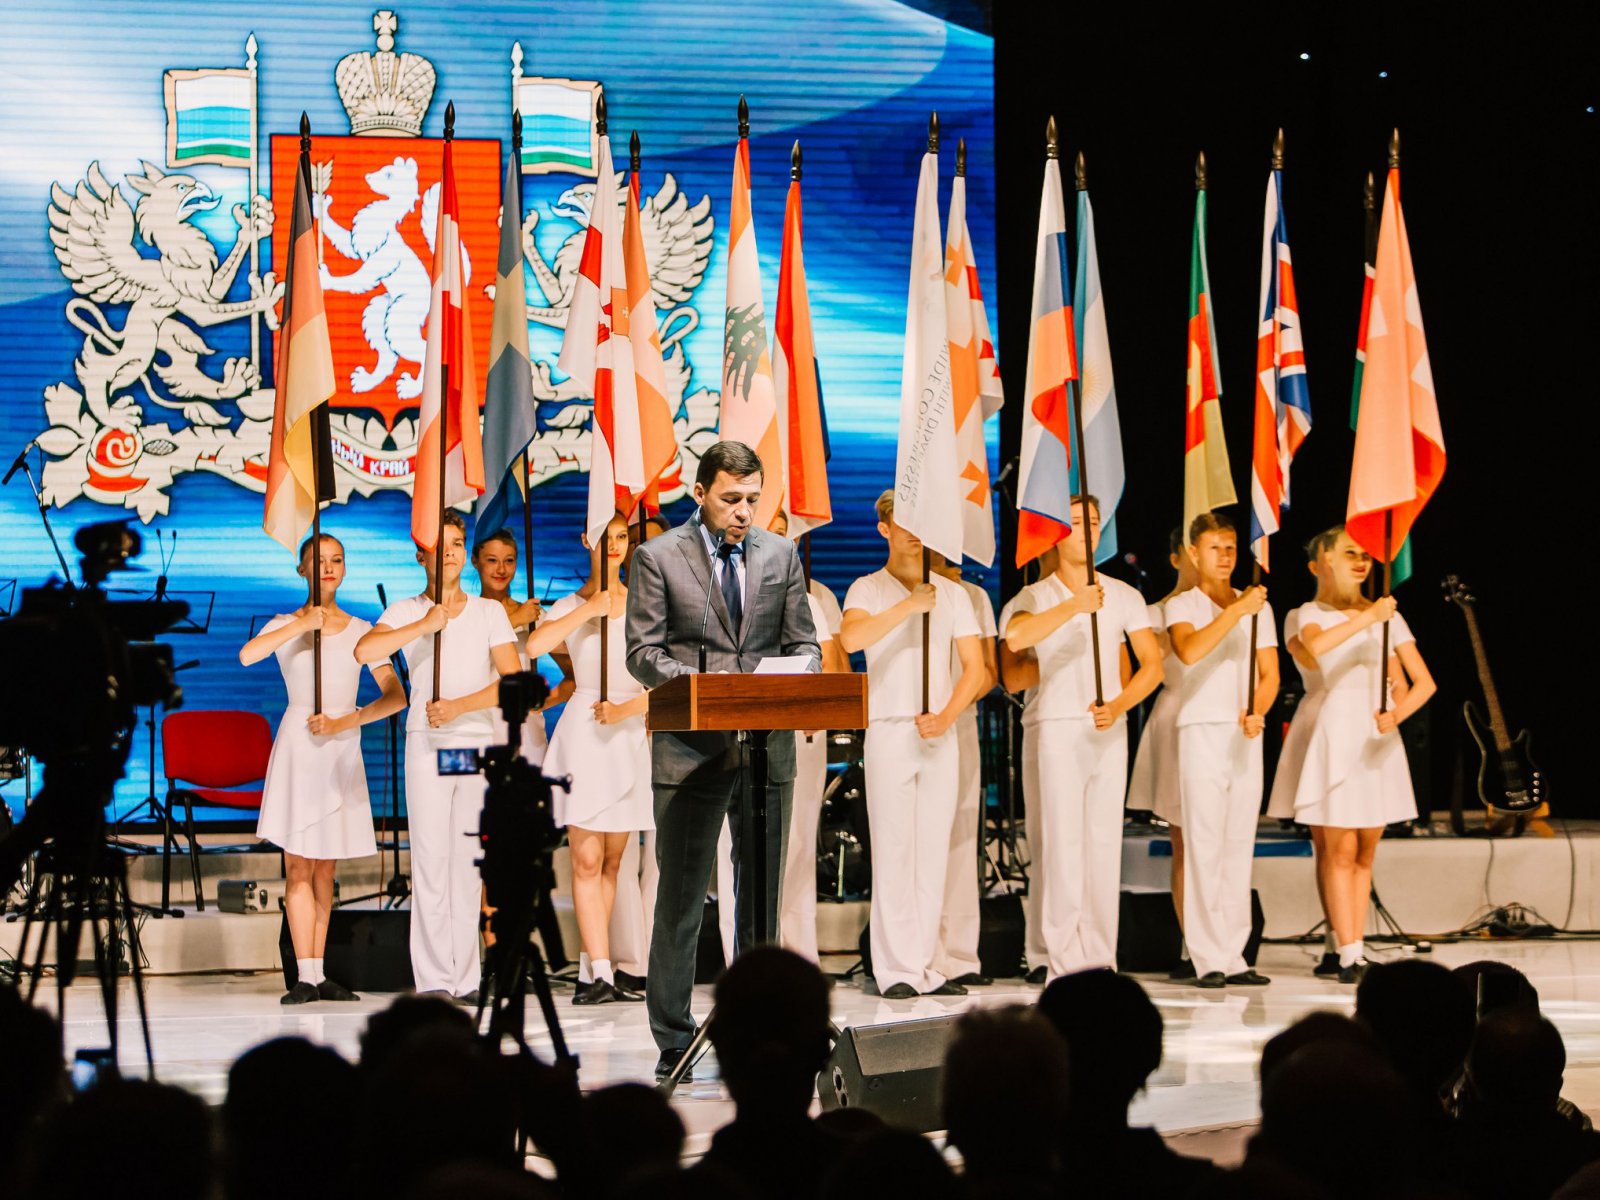 Евгений Куйвашев передал теплые слова Президента России делегатам Всемирного конгресса людей с ограниченными возможностями здоровья